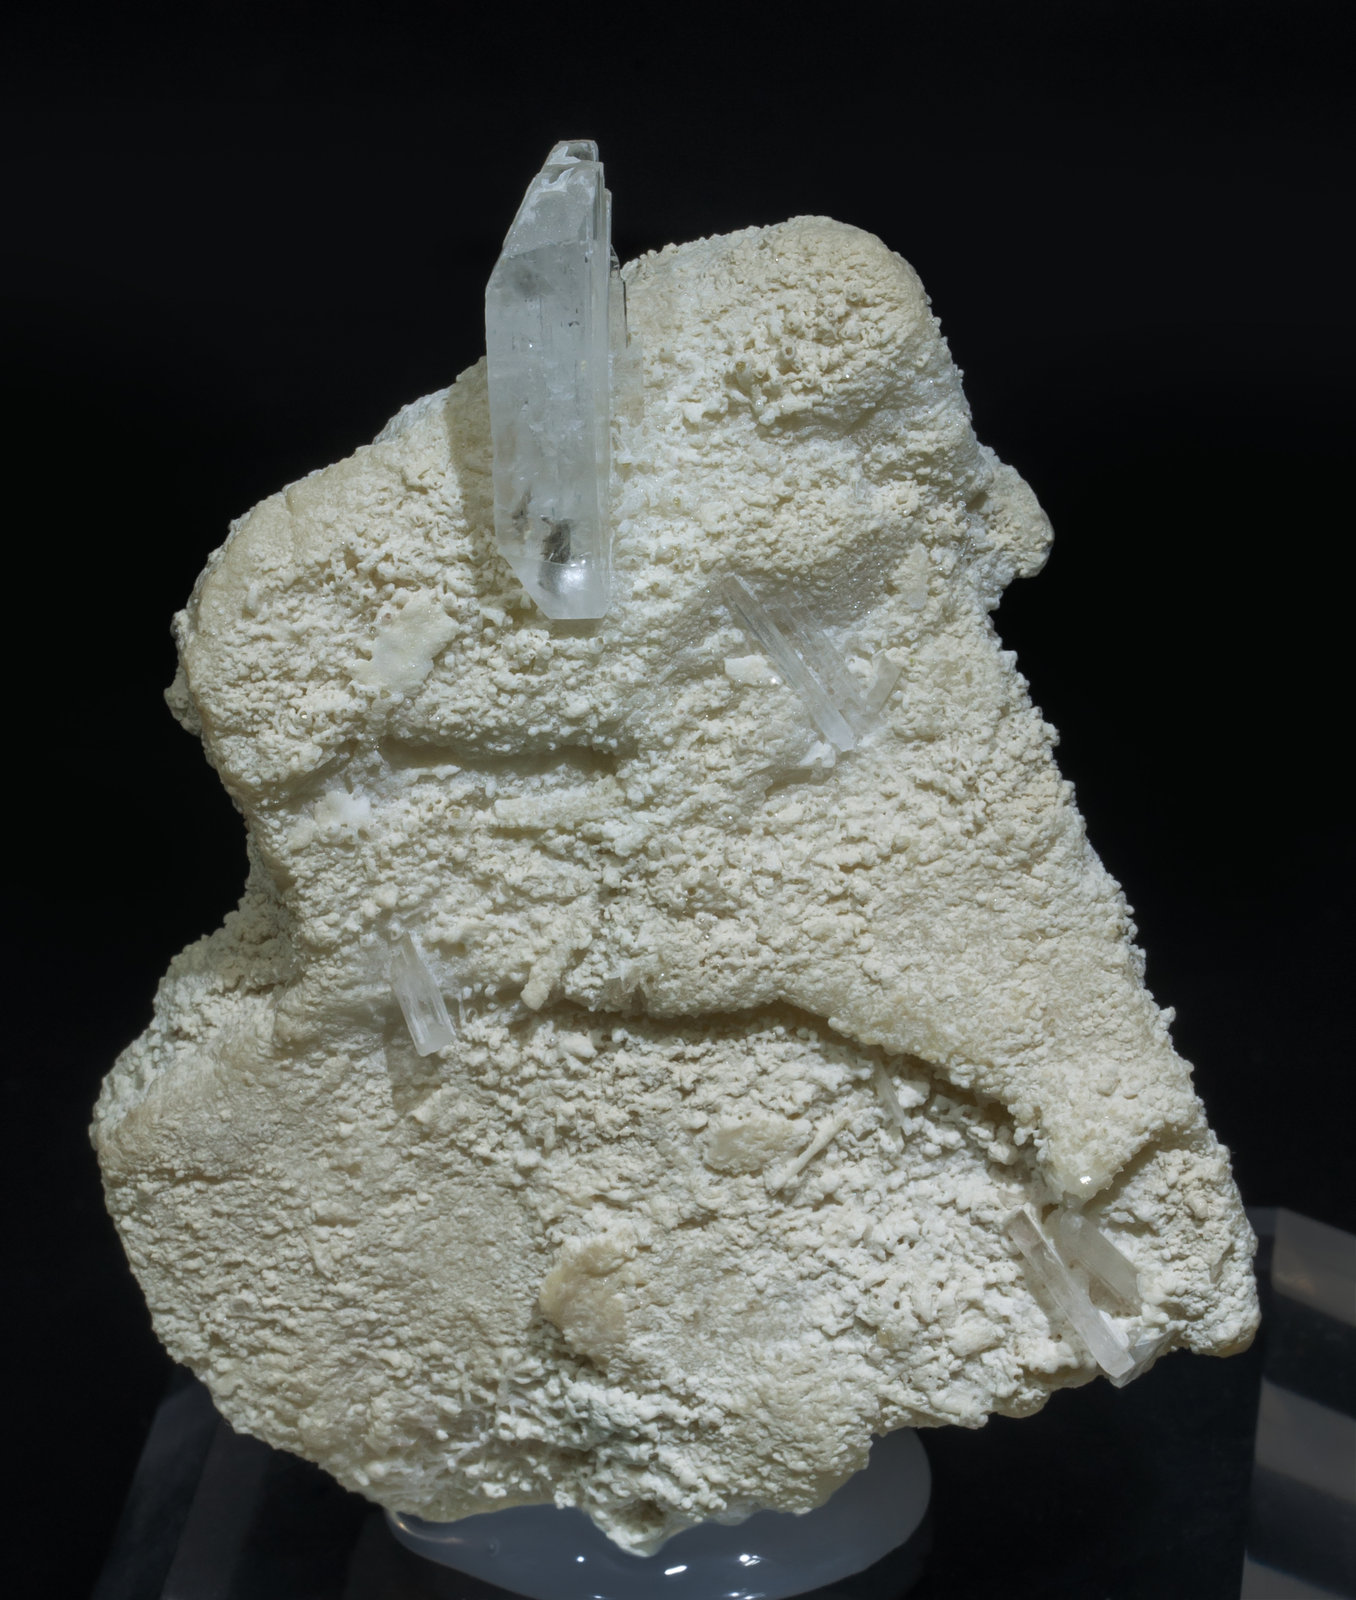 specimens/s_imagesAD5/Hambergite-TM89AD5f.jpg